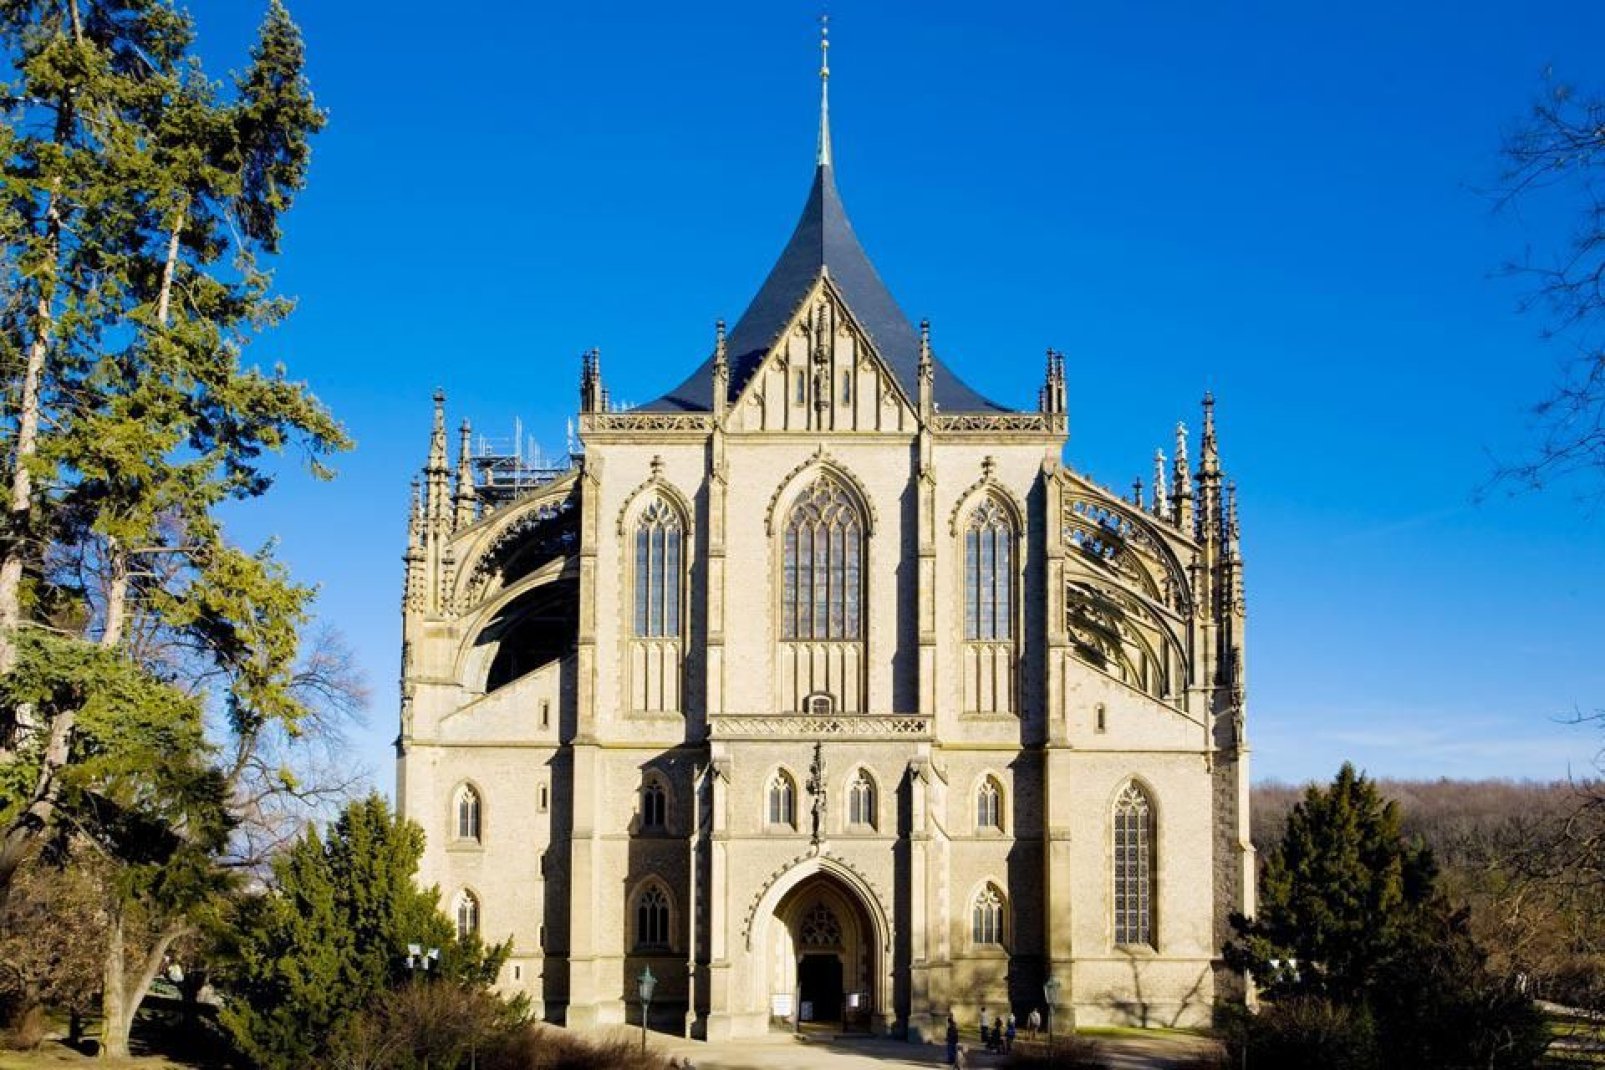 Una delle chiese gotiche più famose dell'Europa centrale. È classificata come patrimonio mondiale dall'Unesco.